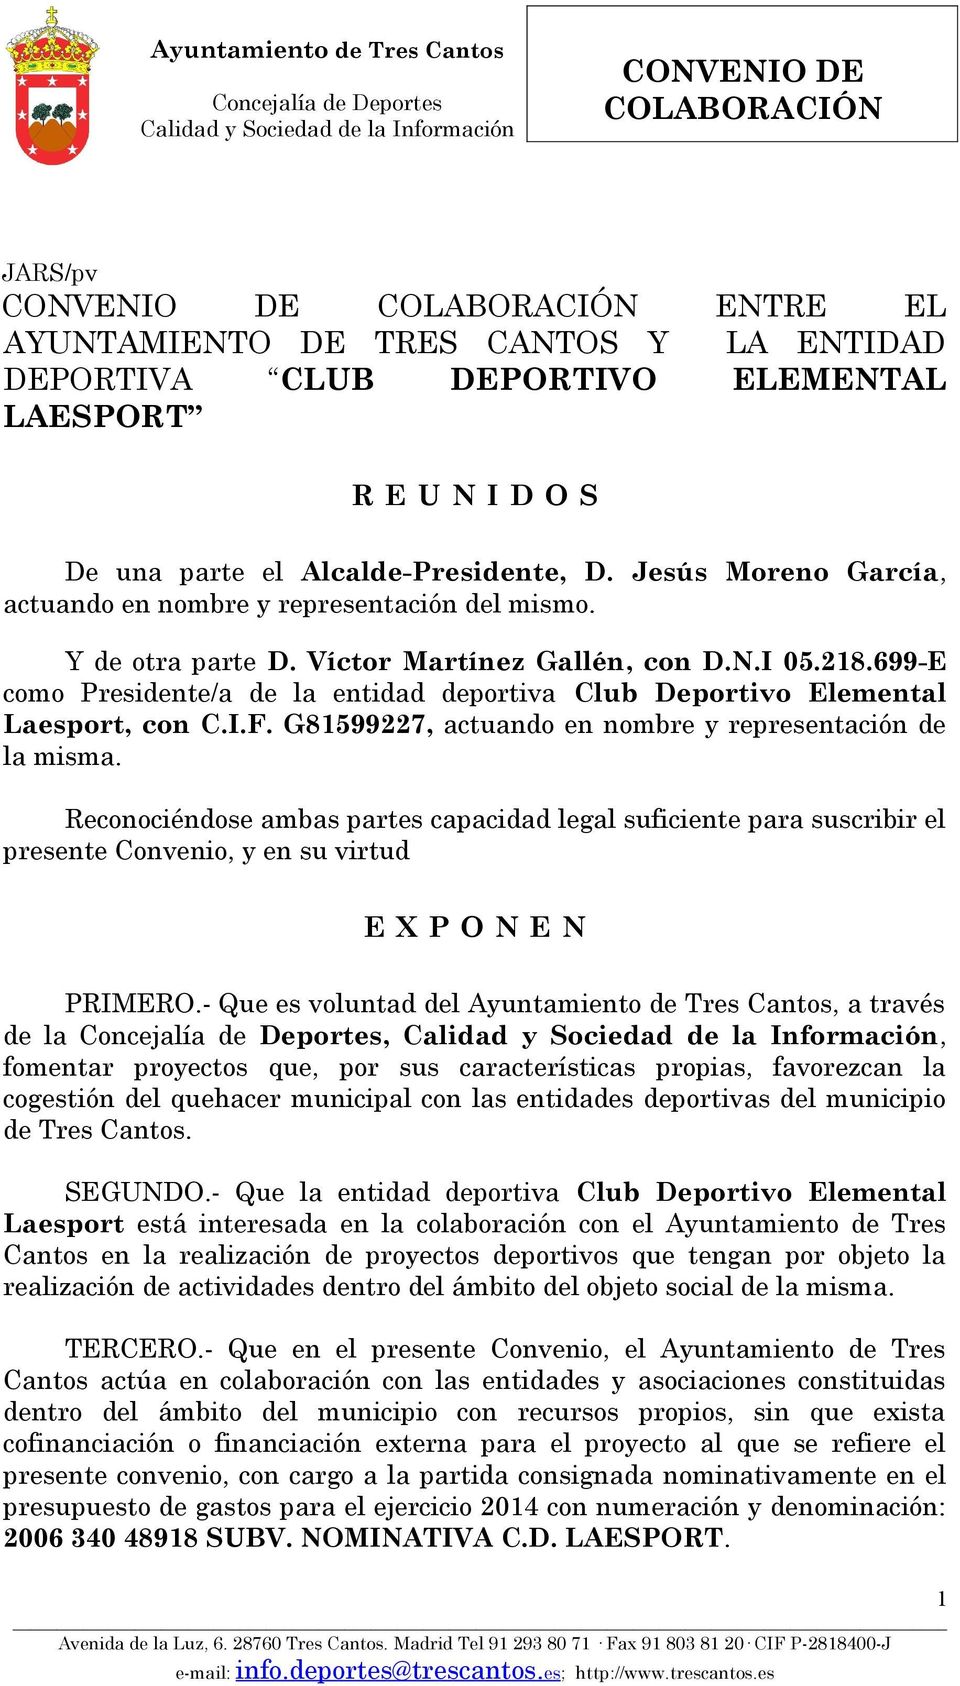 699-E como Presidente/a de la entidad deportiva Club Deportivo Elemental Laesport, con C.I.F. G81599227, actuando en nombre y representación de la misma.